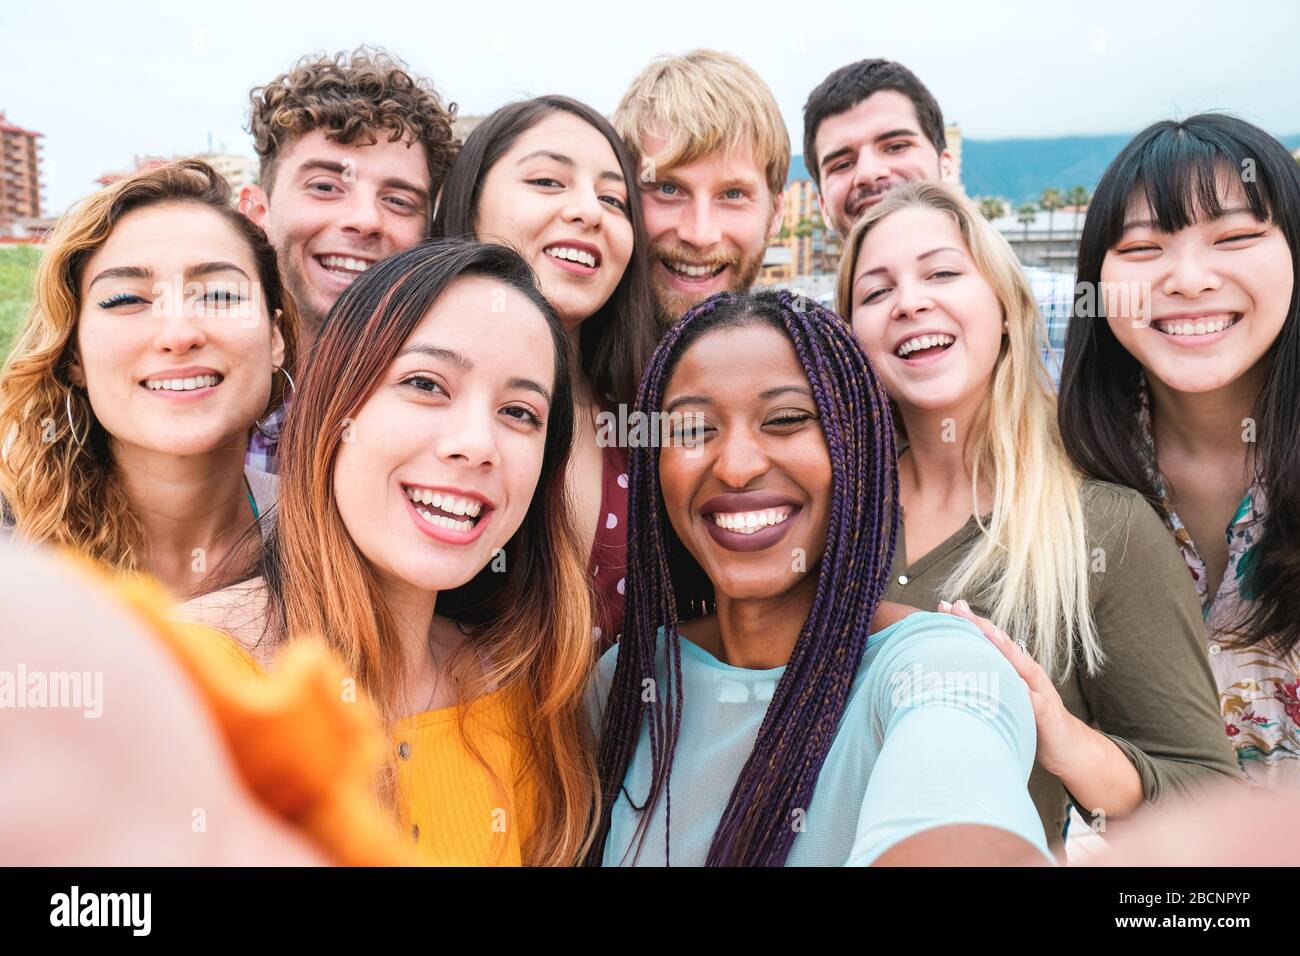 Junge Freunde aus verschiedenen Kulturen und Rassen fotografieren, glückliche Gesichter machen - Millennial-Generation und Freundschaftskonzept mit Studenten Menschen hav Stockfoto